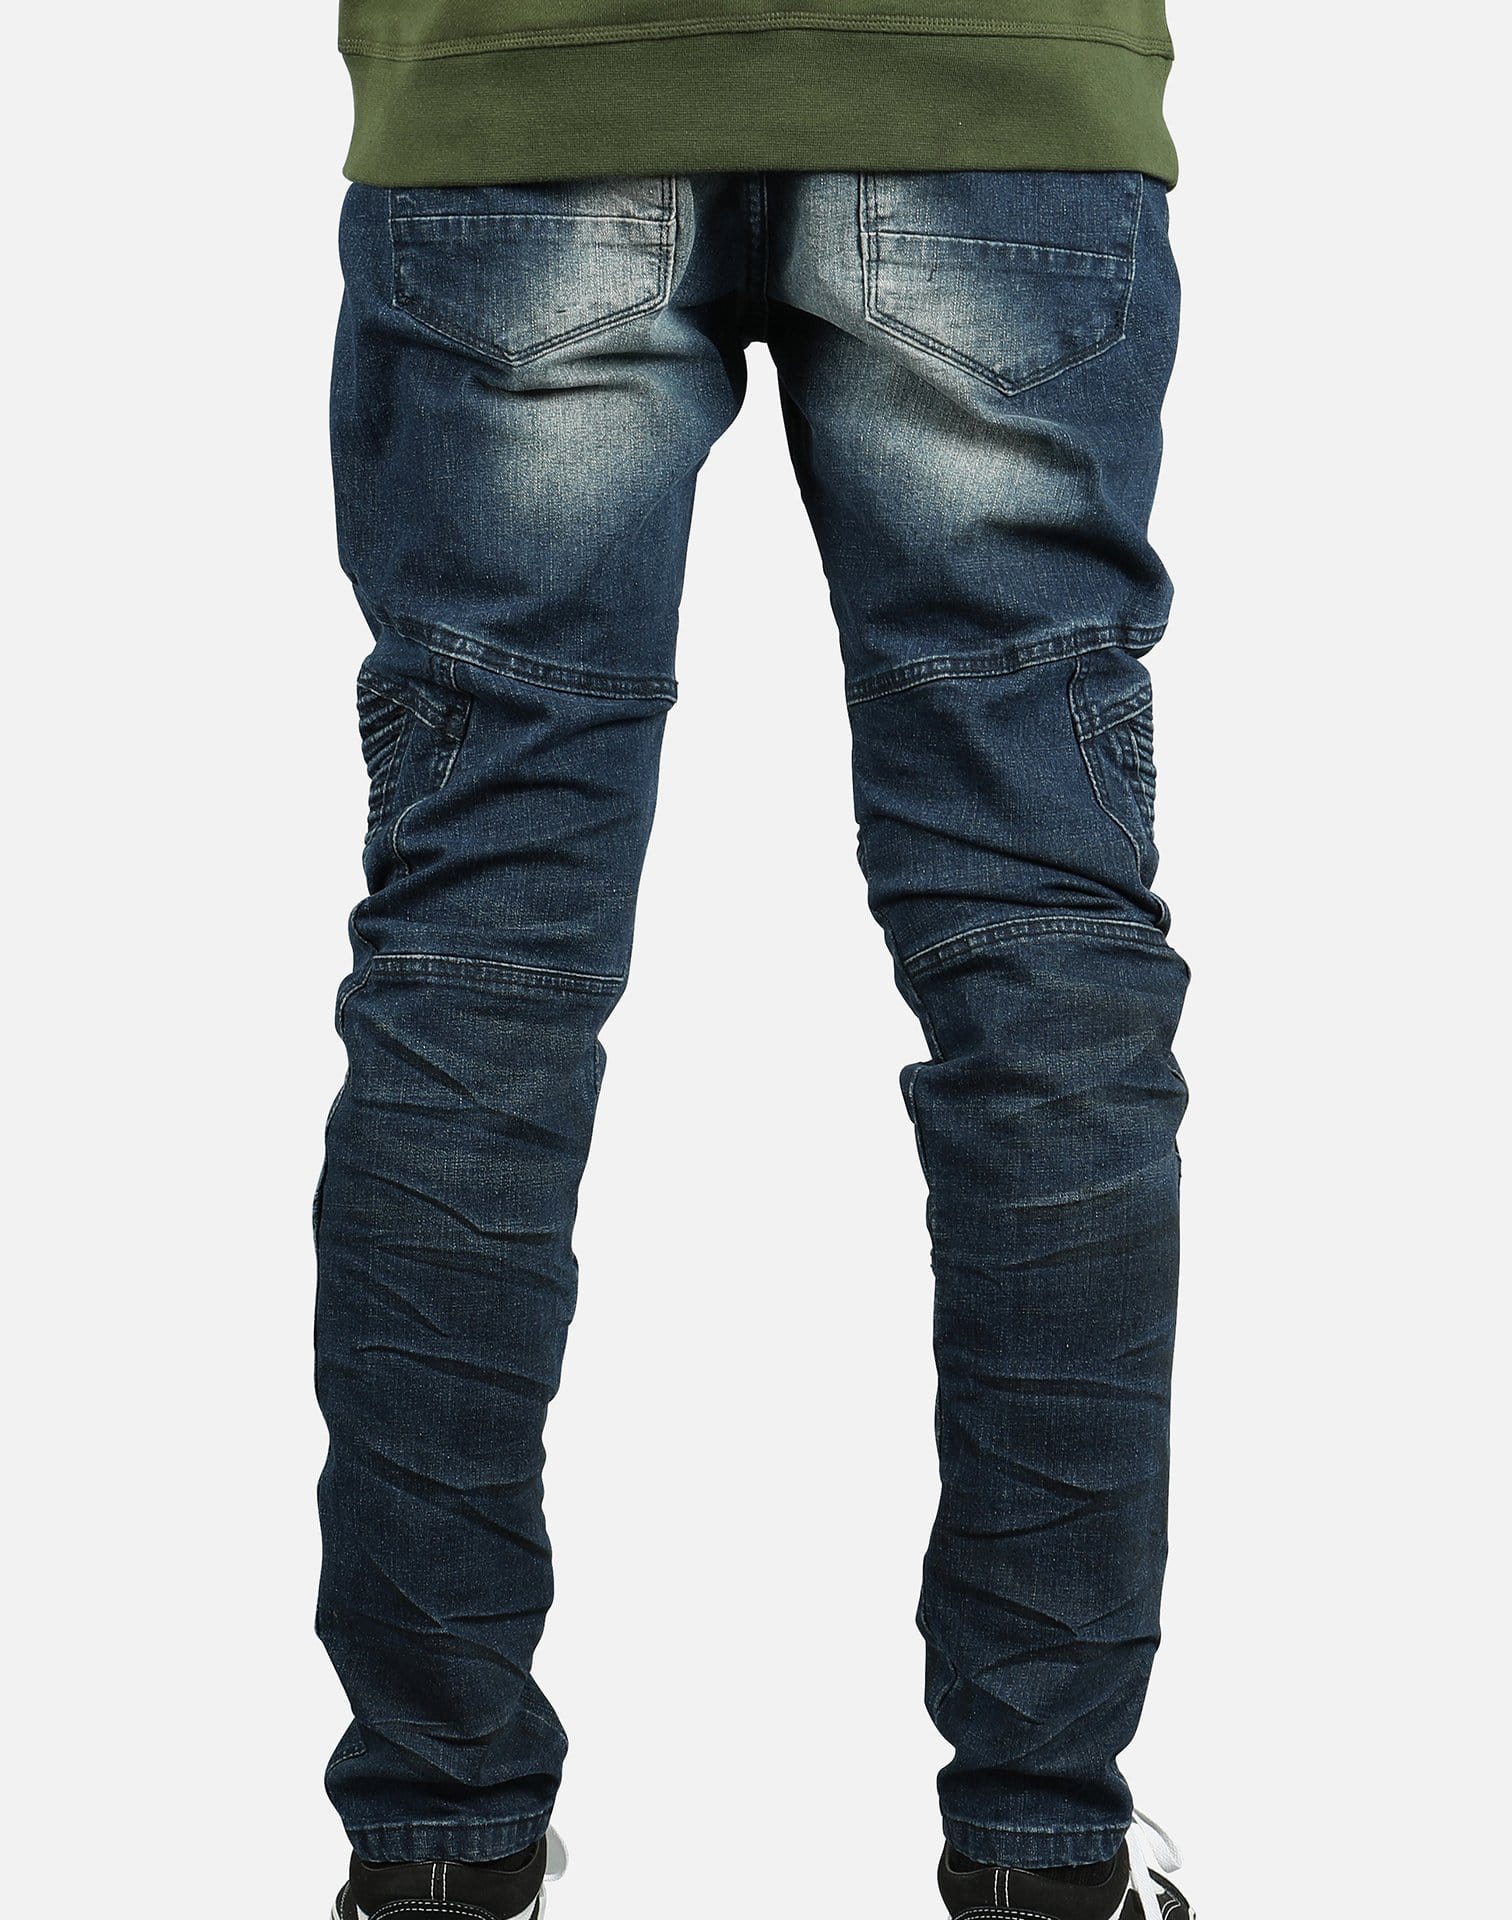 Smoke Men's Fashion Denim Jeans